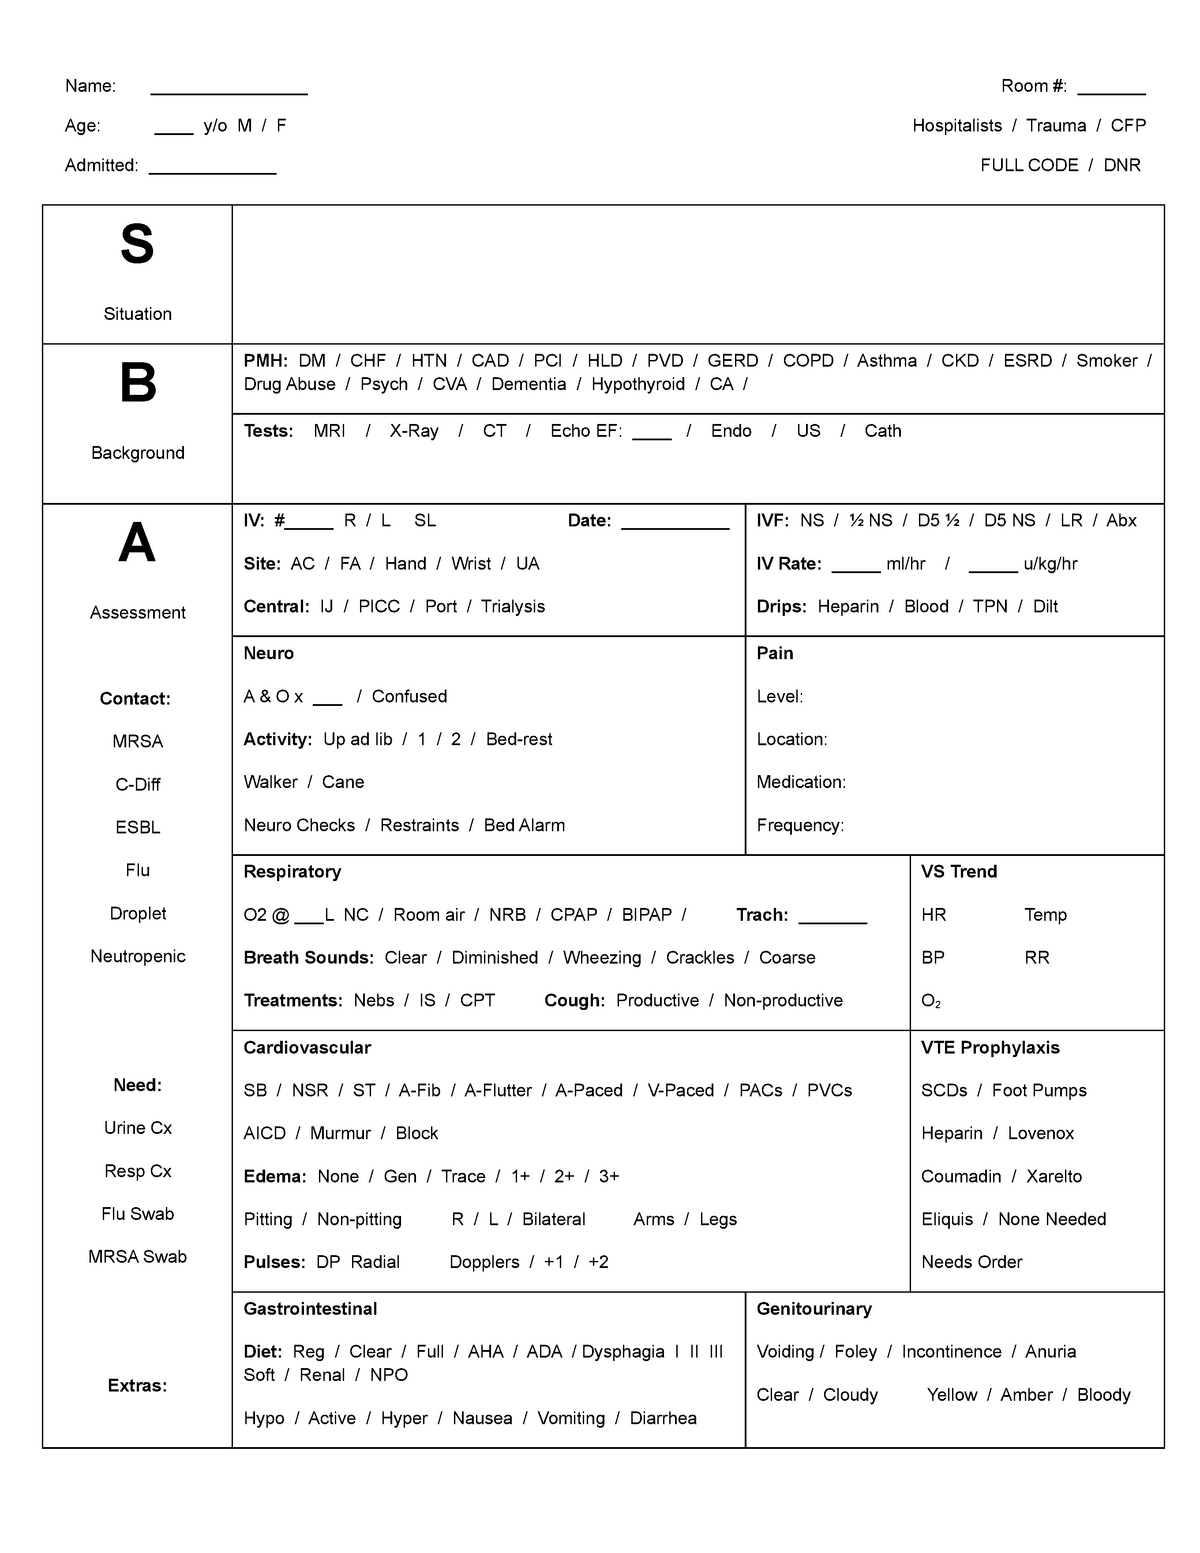 Sbar Fullsize Nursing Report Sheet Name Room